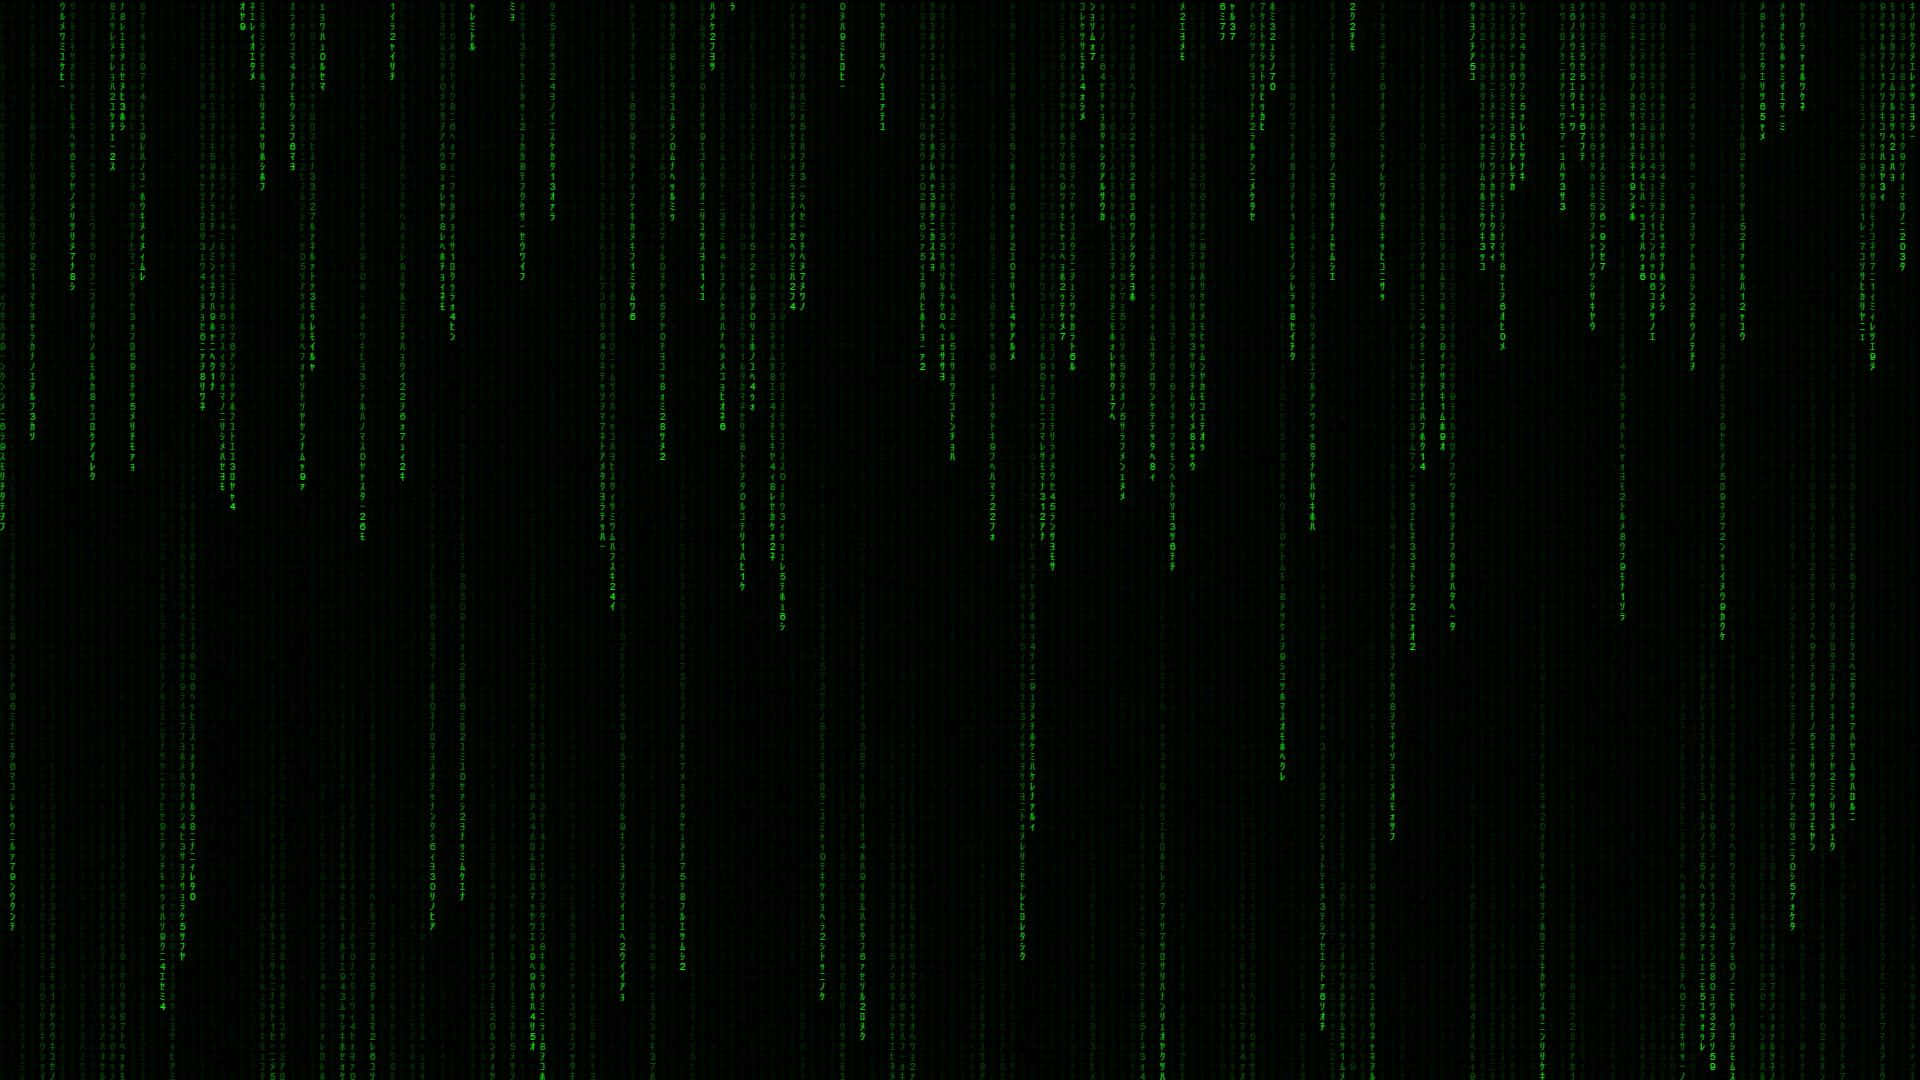 Matrixensvirkelighed